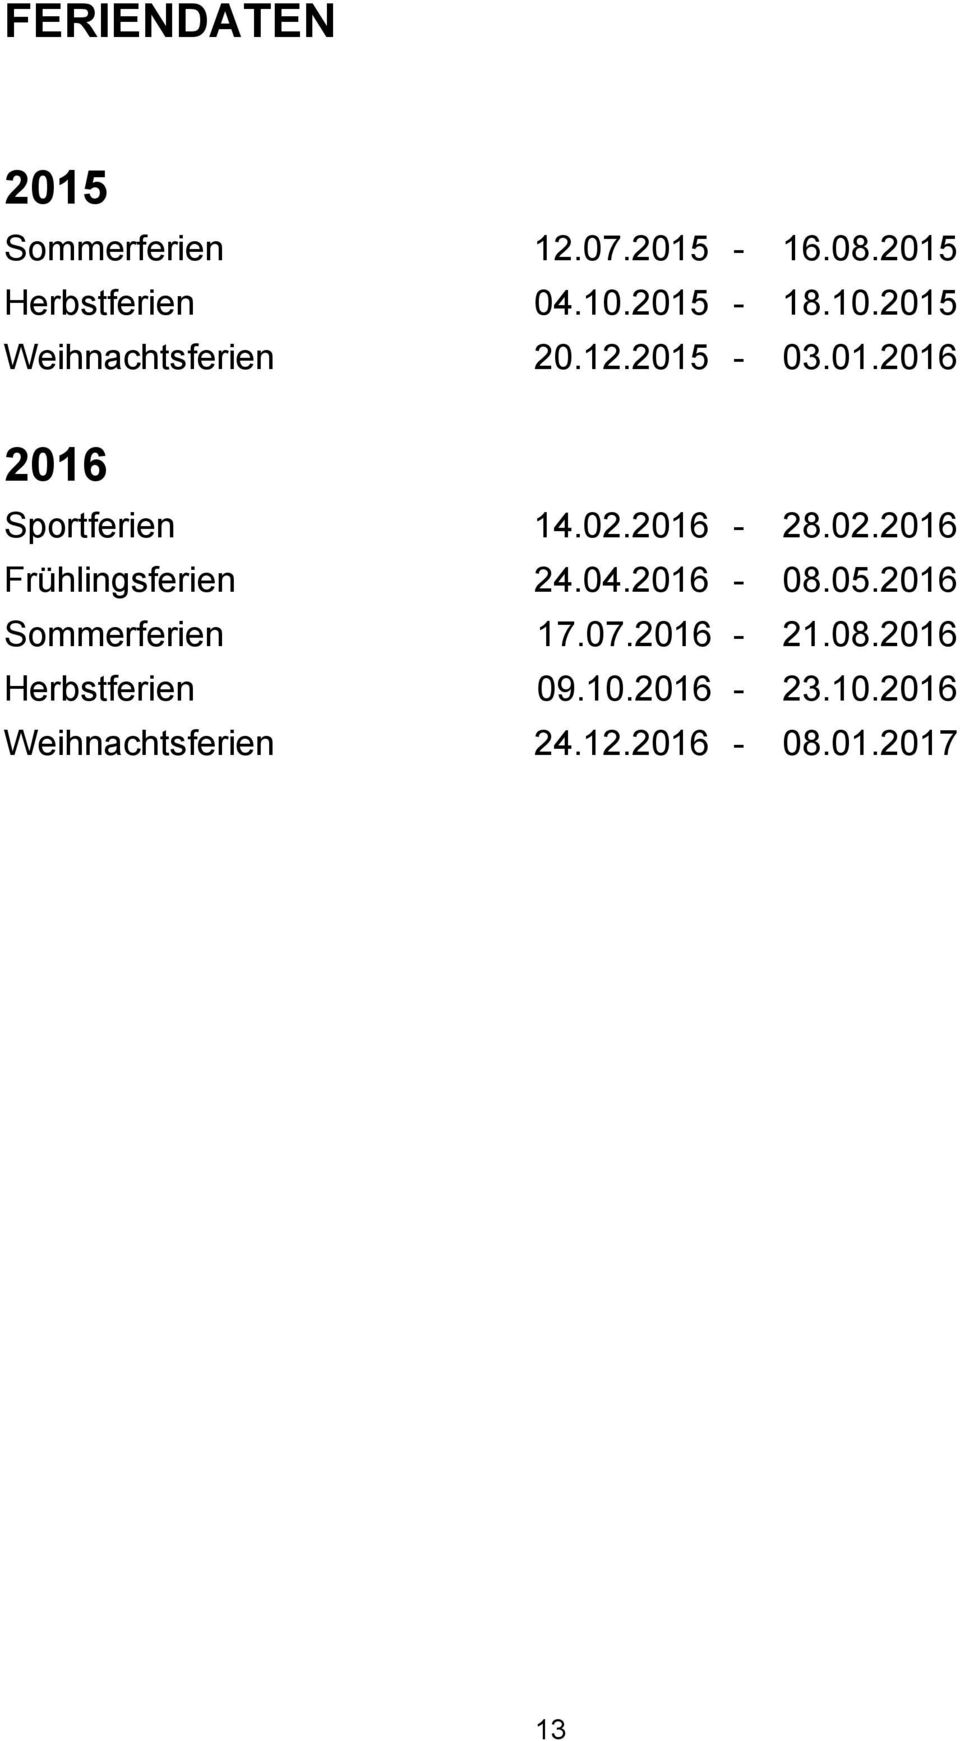 02.2016 Frühlingsferien 2.0.2016-08.05.2016 Sommerferien 17.07.2016-21.08.2016 Herbstferien 09.